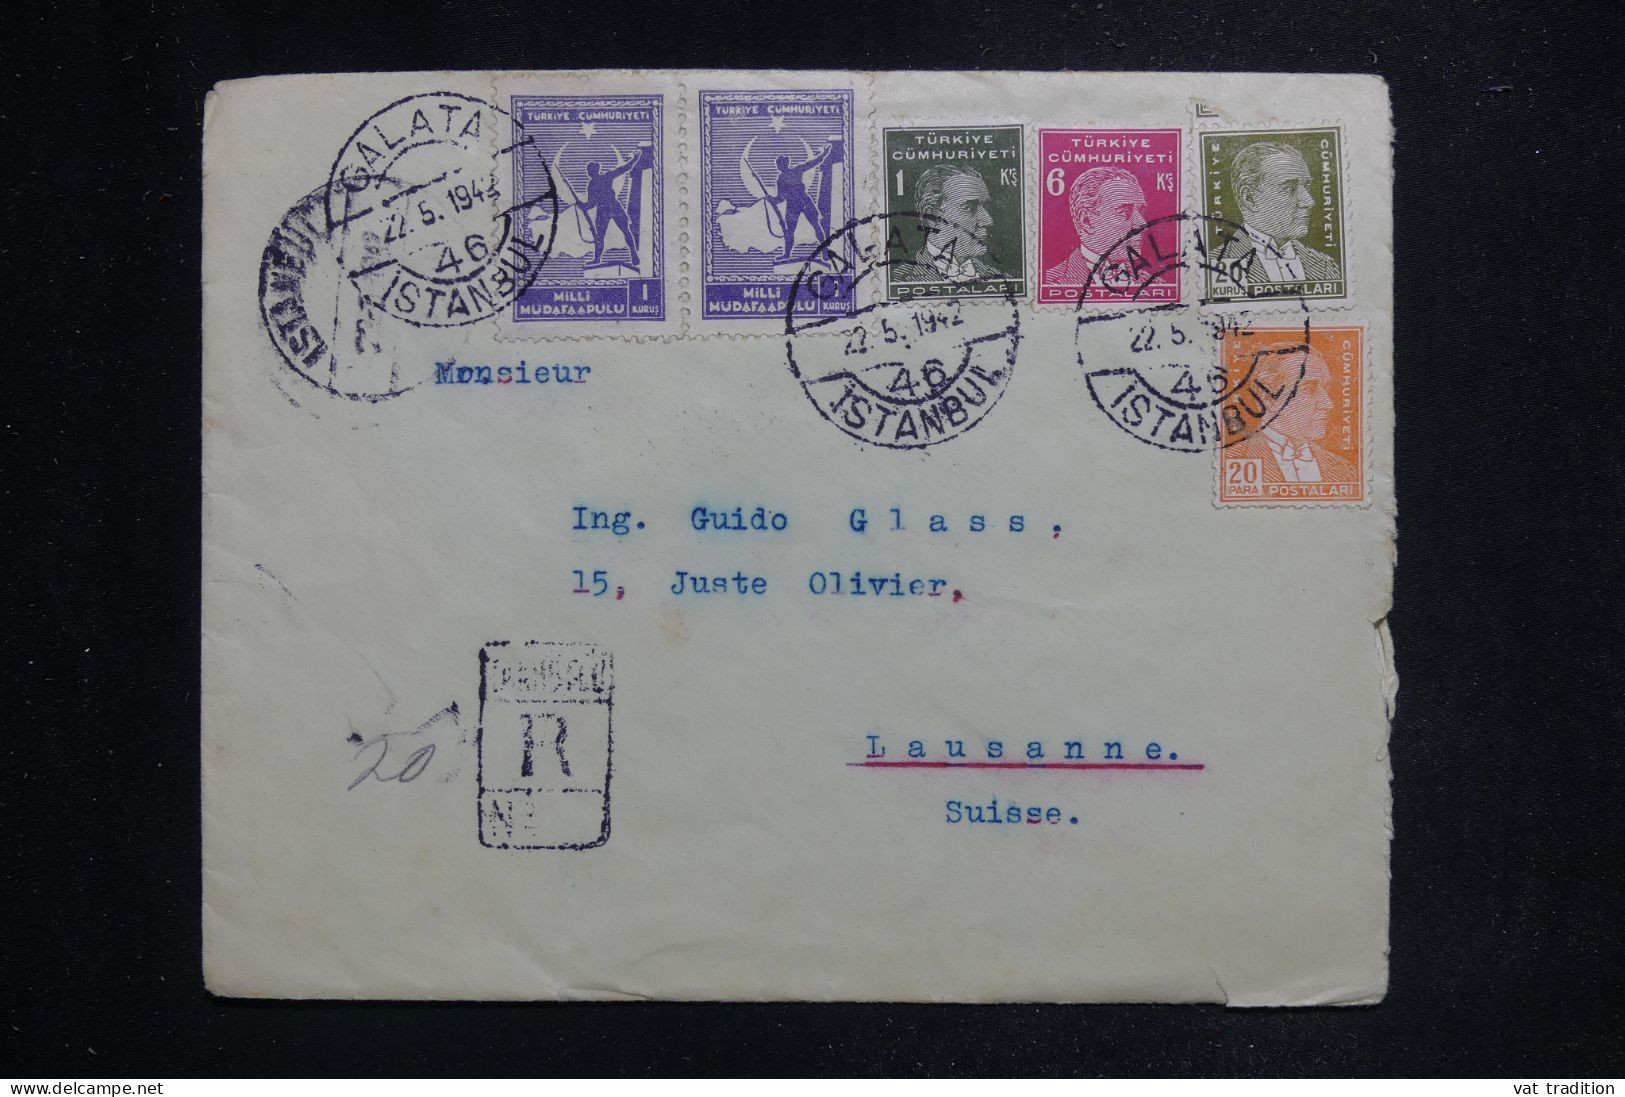 TURQUIE - Enveloppe en recommandé de Istanbul pour la Suisse en 1942 - L 144323